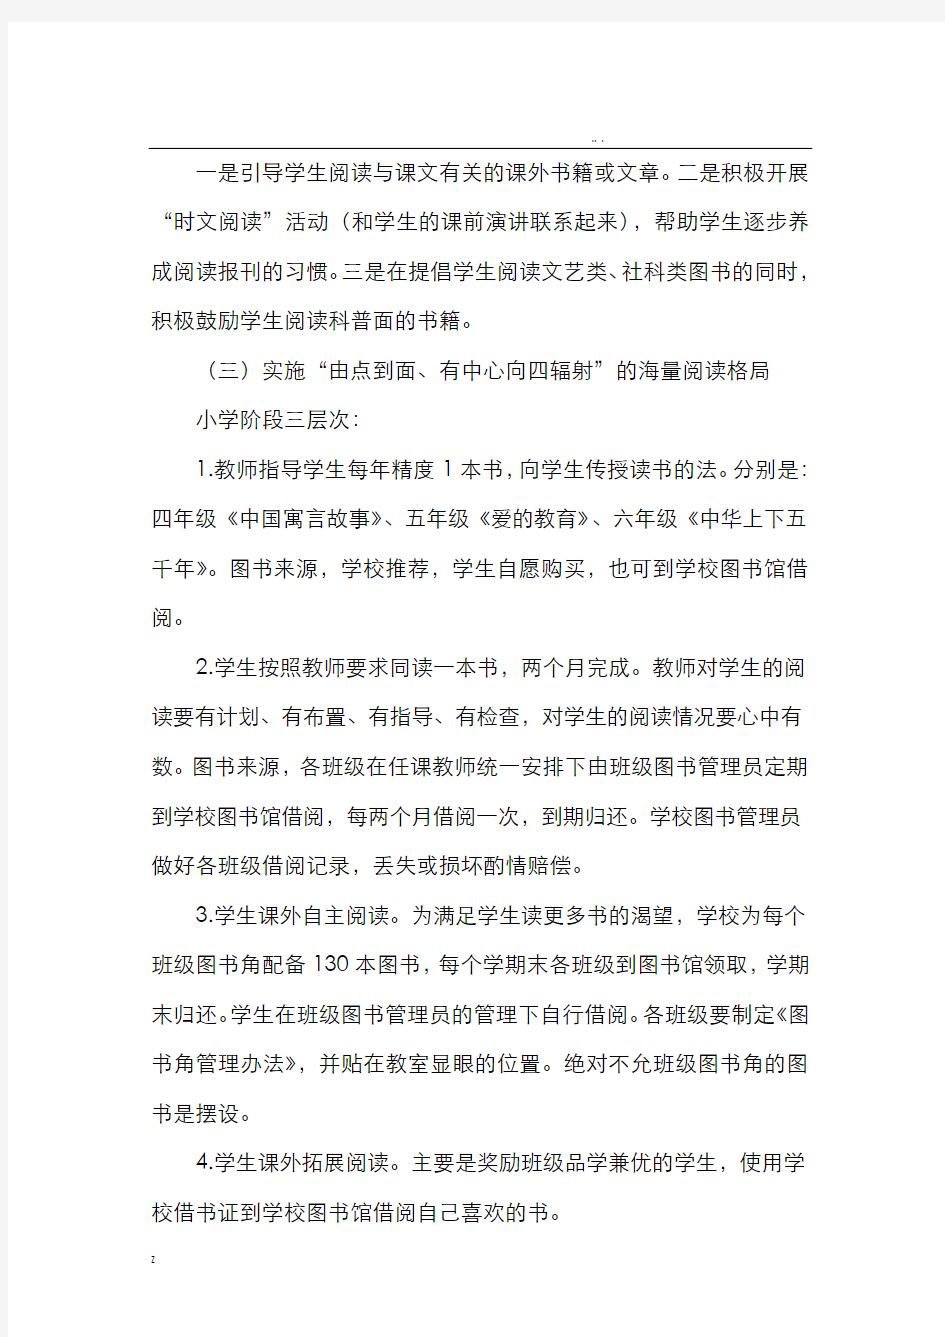 淅川县思源实验学校海量阅读实施方案